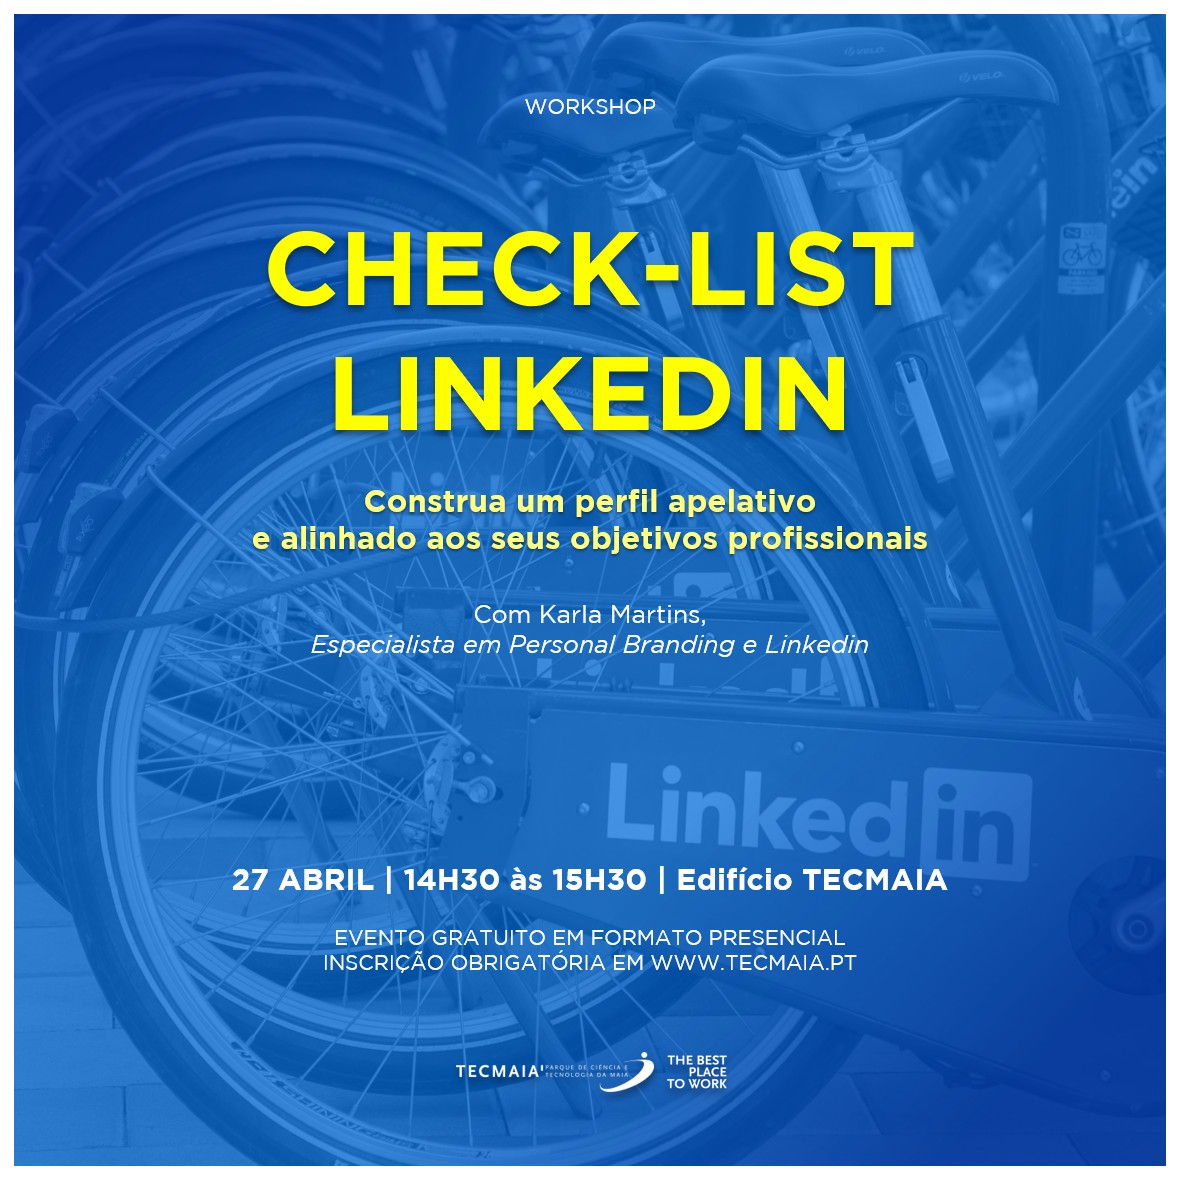 Workshop - Check List LinkedIn